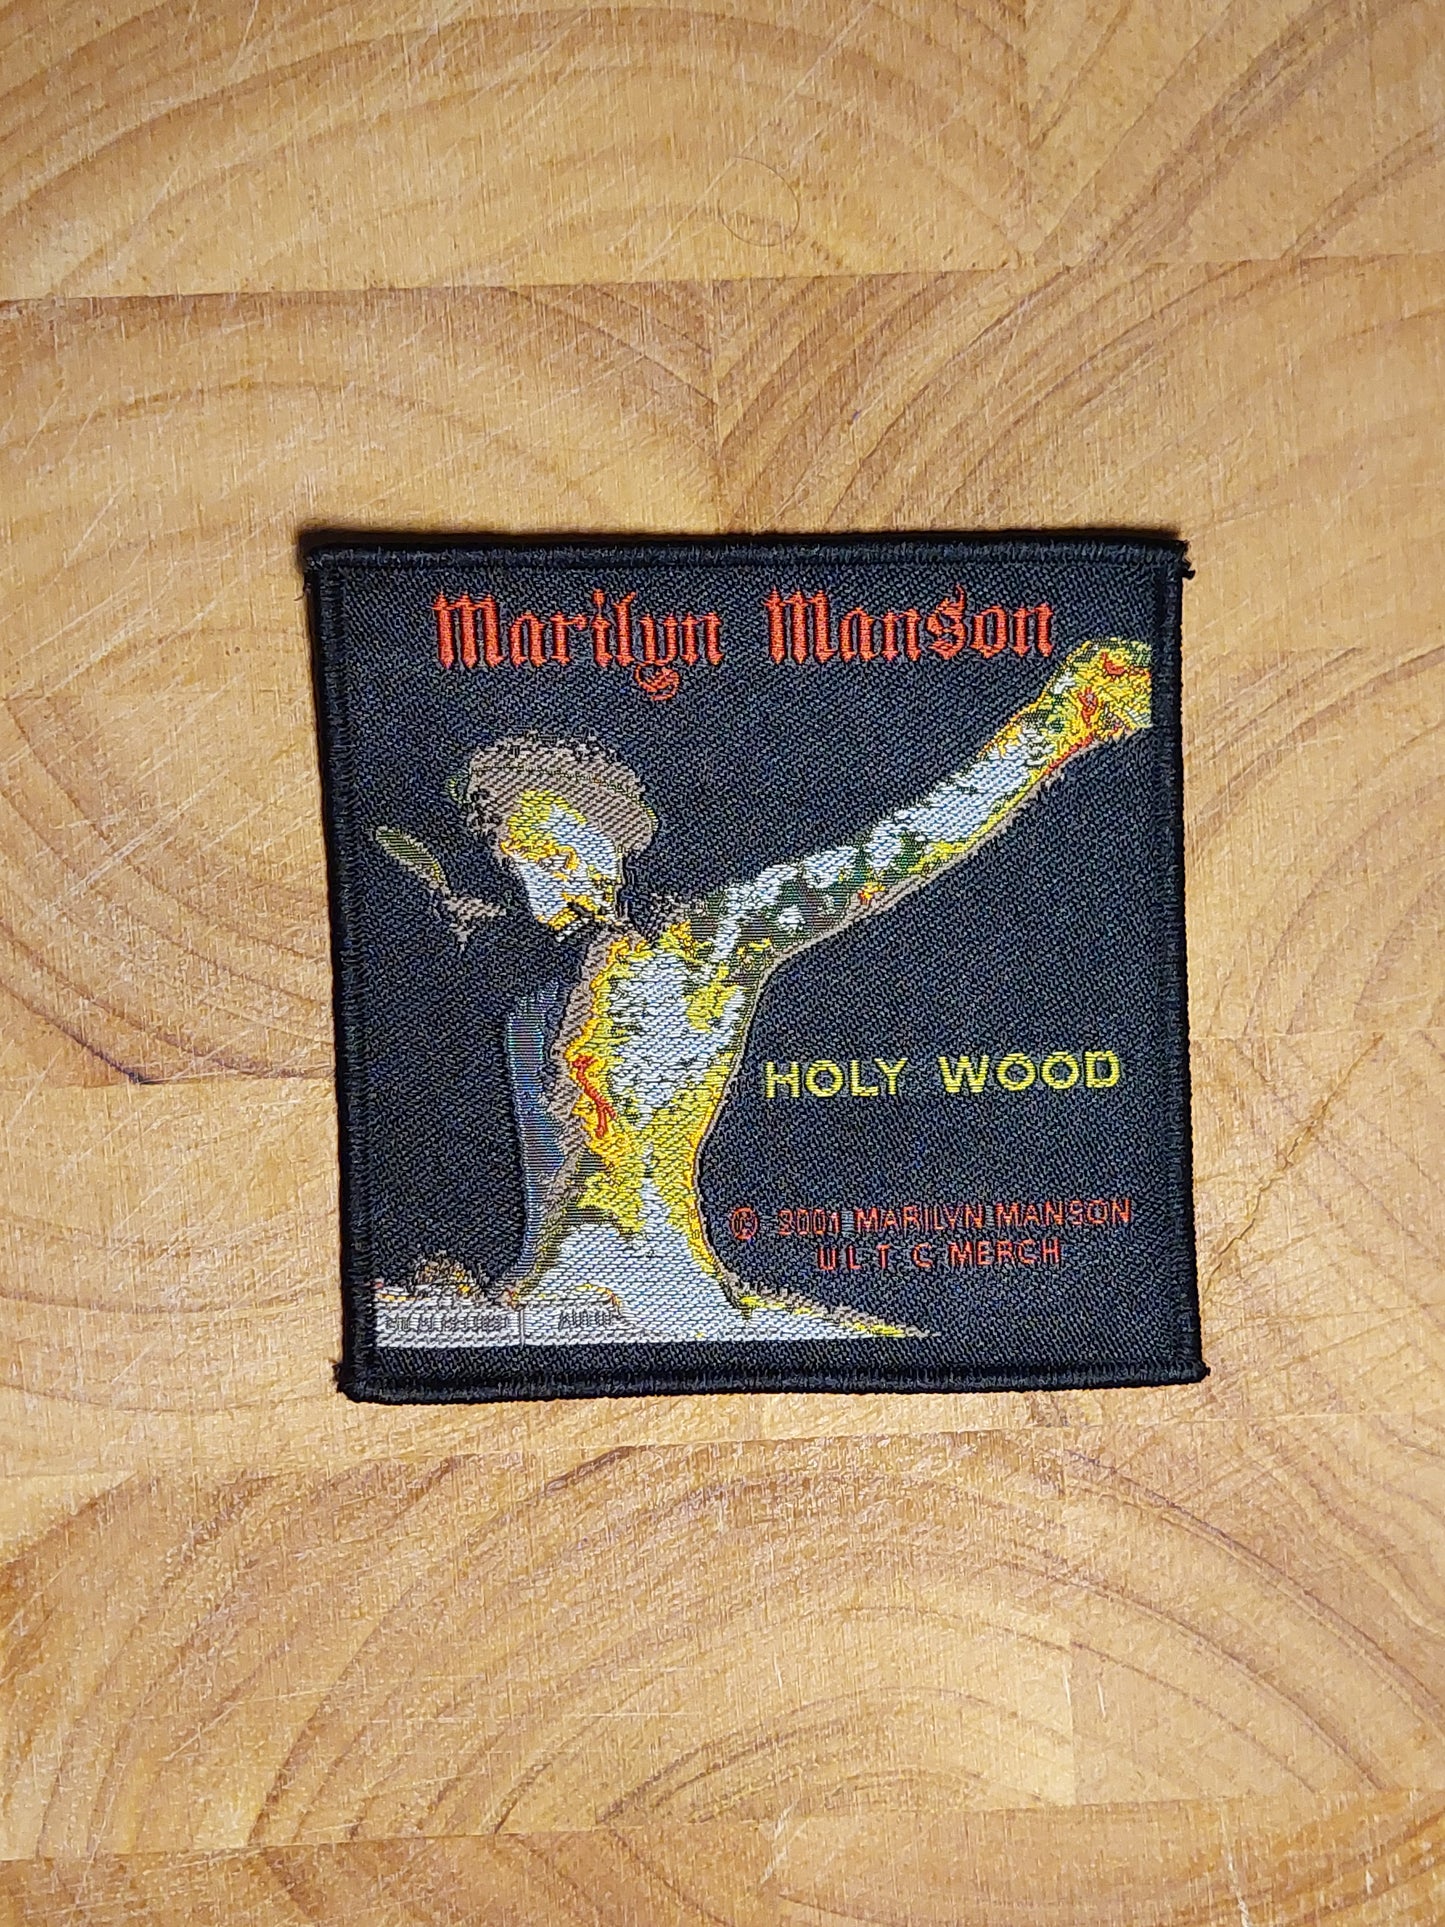 Marilyn manson holy wood